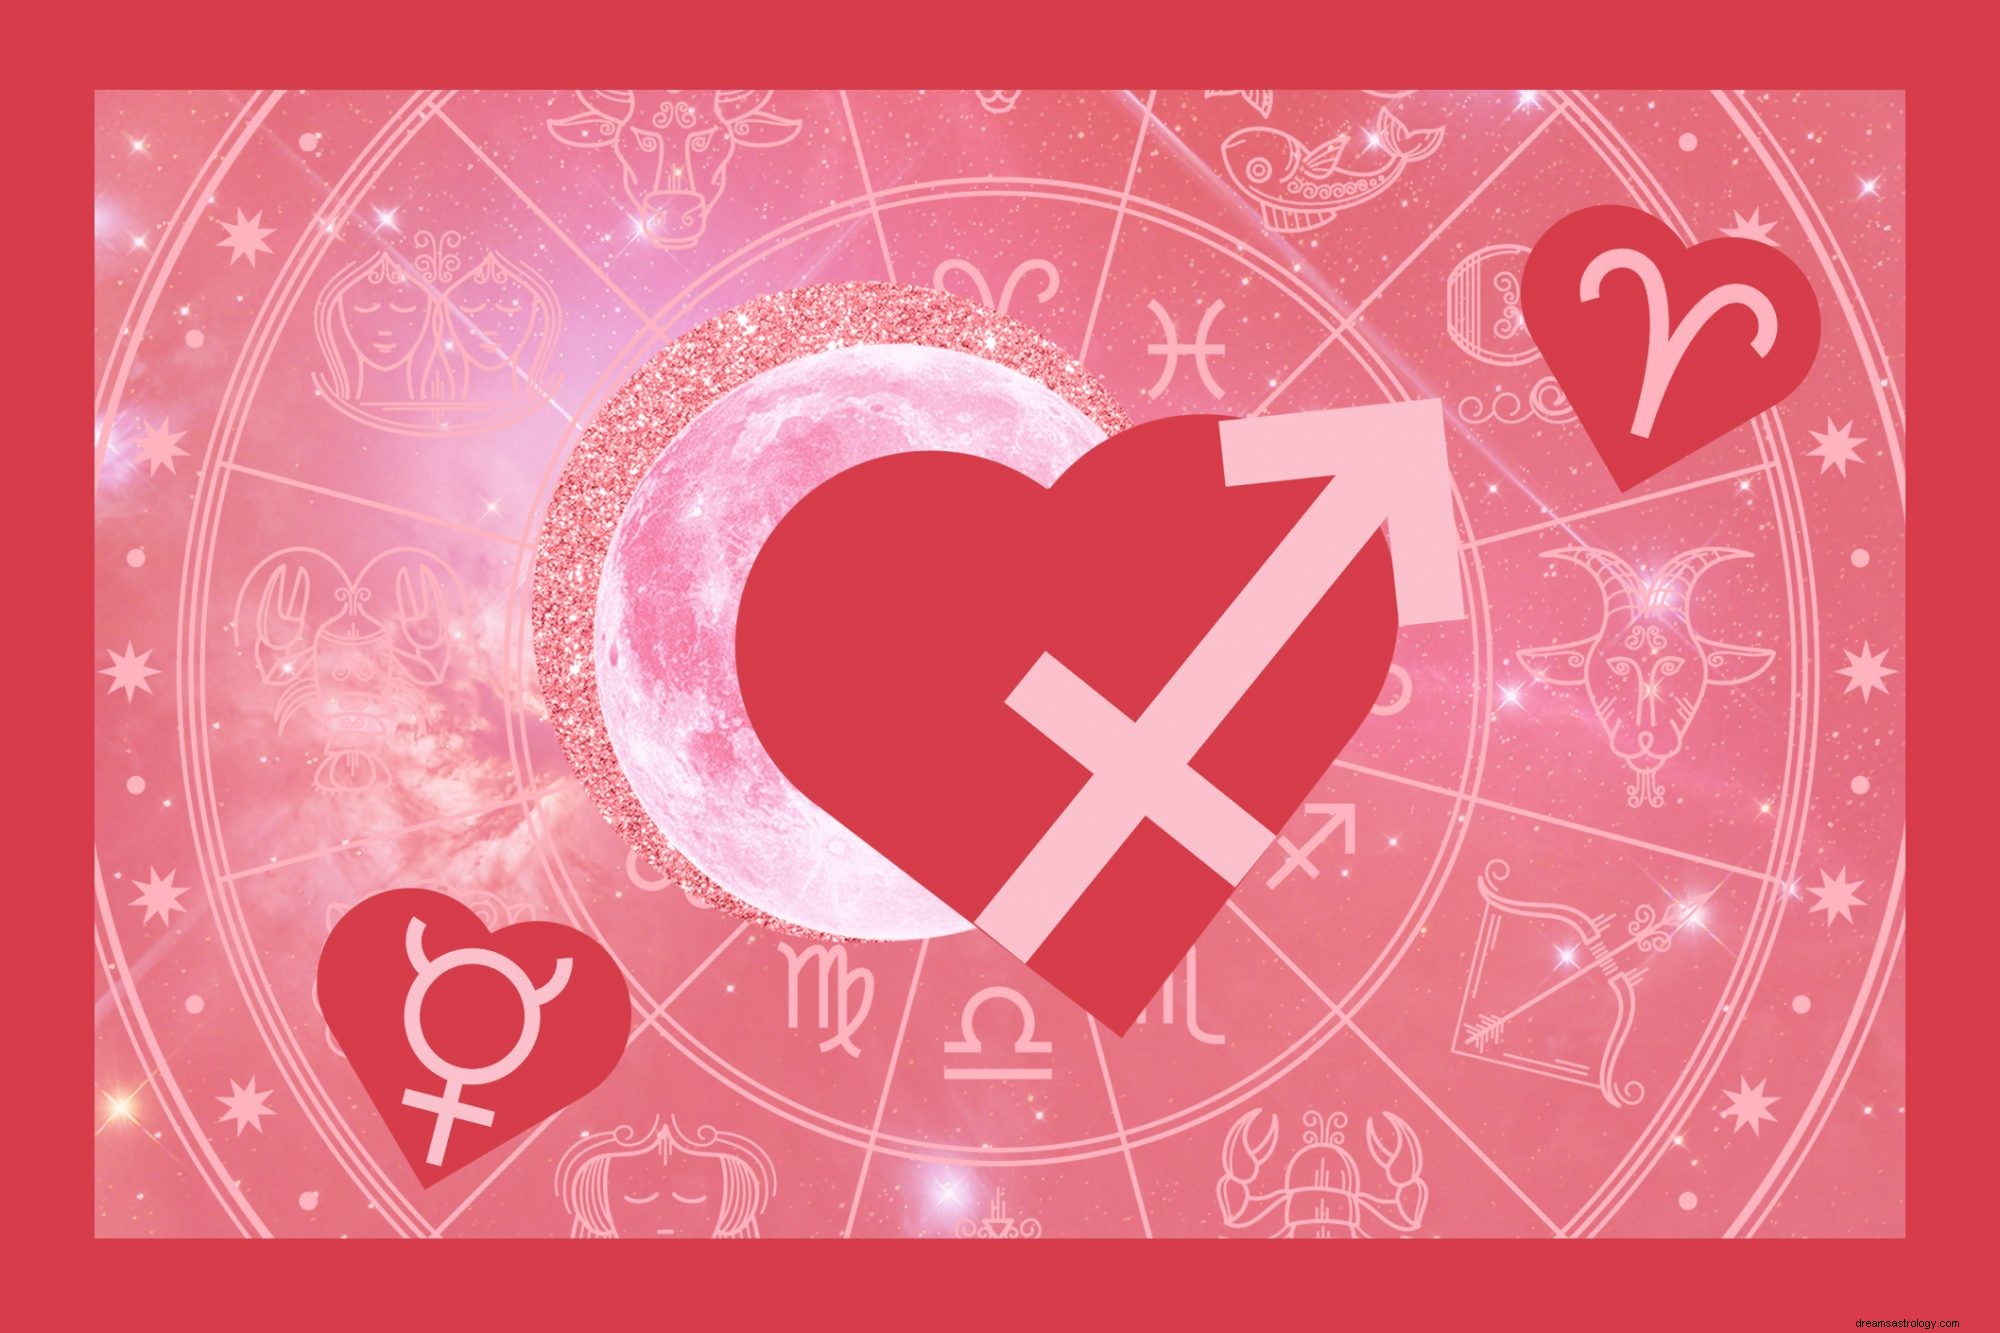 Esto es lo que la astrología predice para tu día de San Valentín este año 